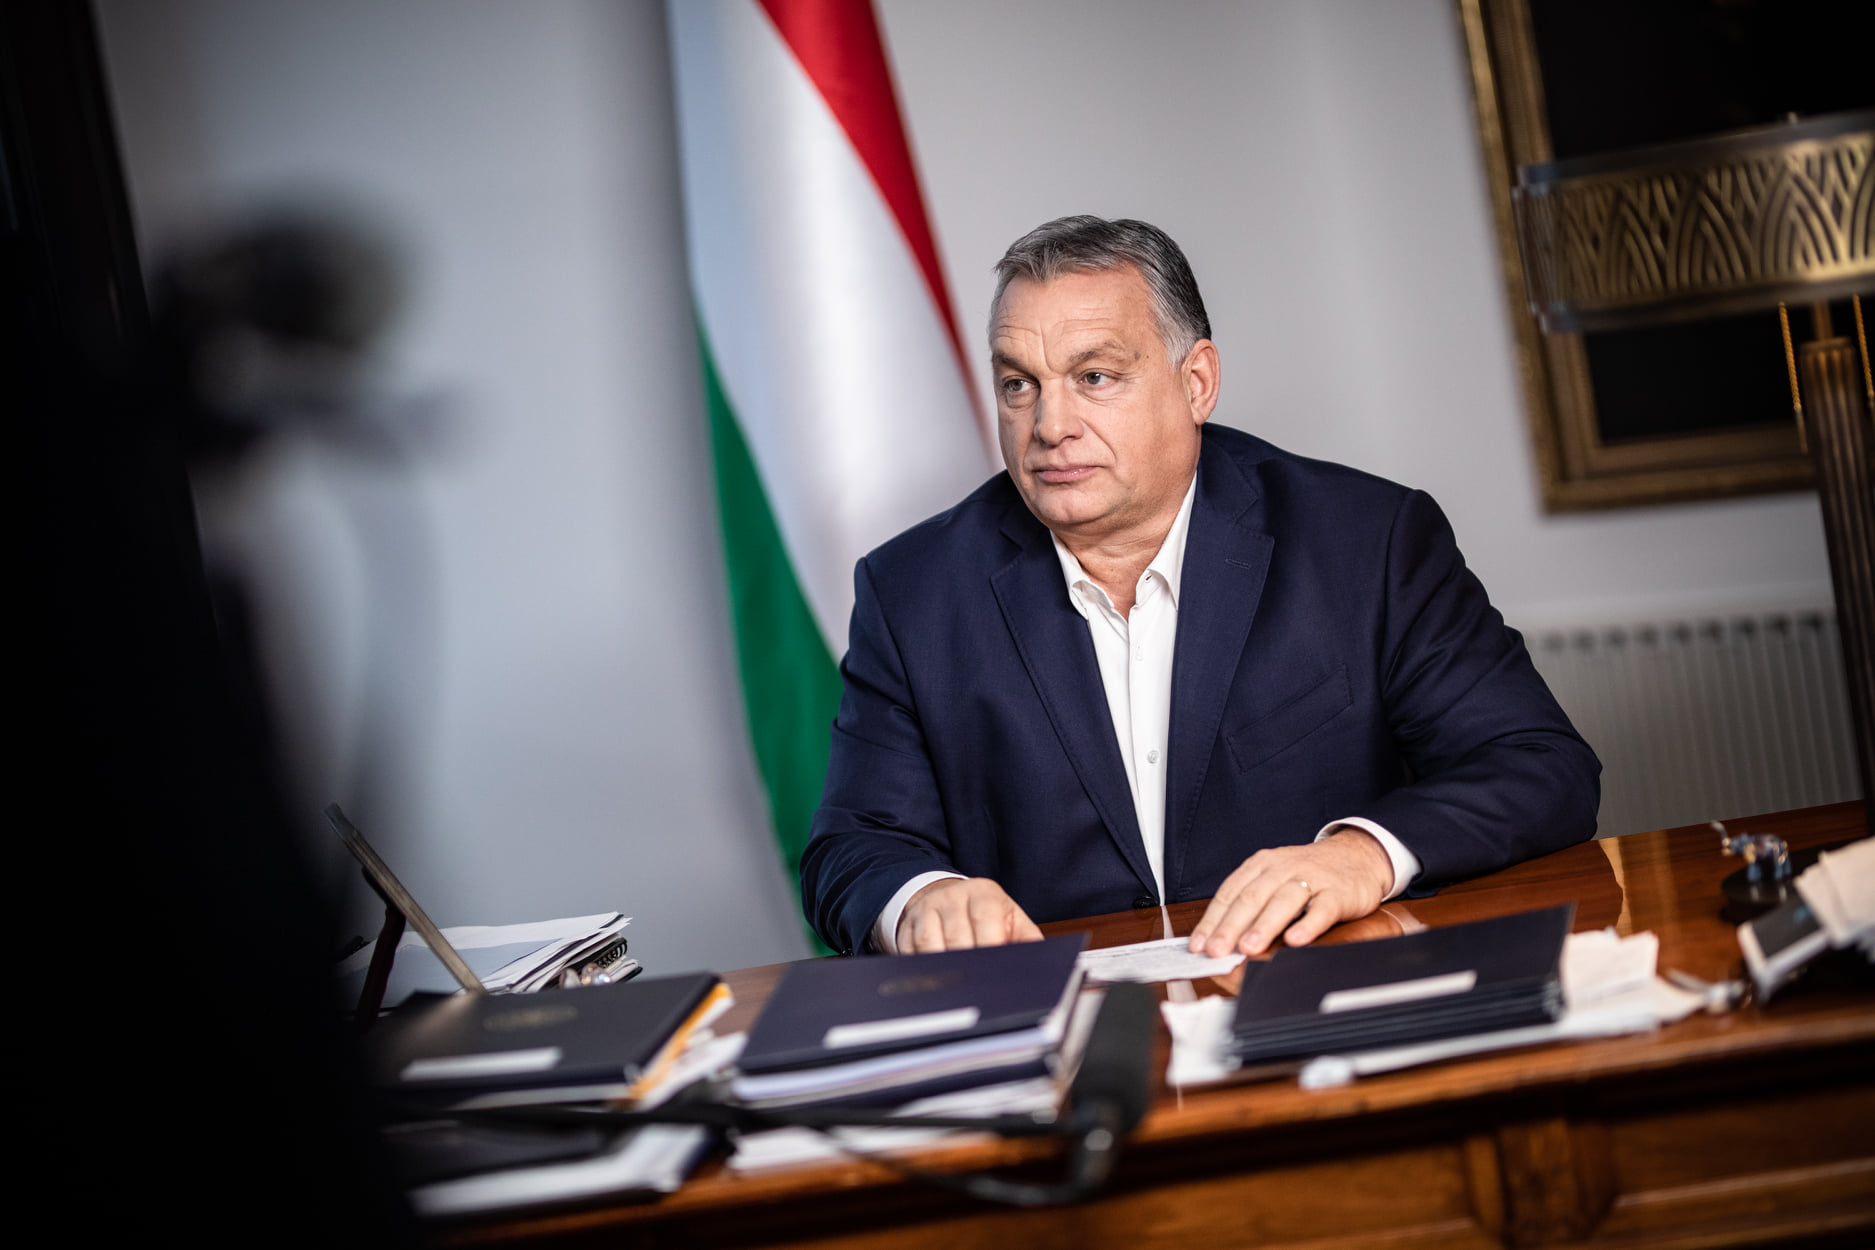 orbán nuove regole economiche